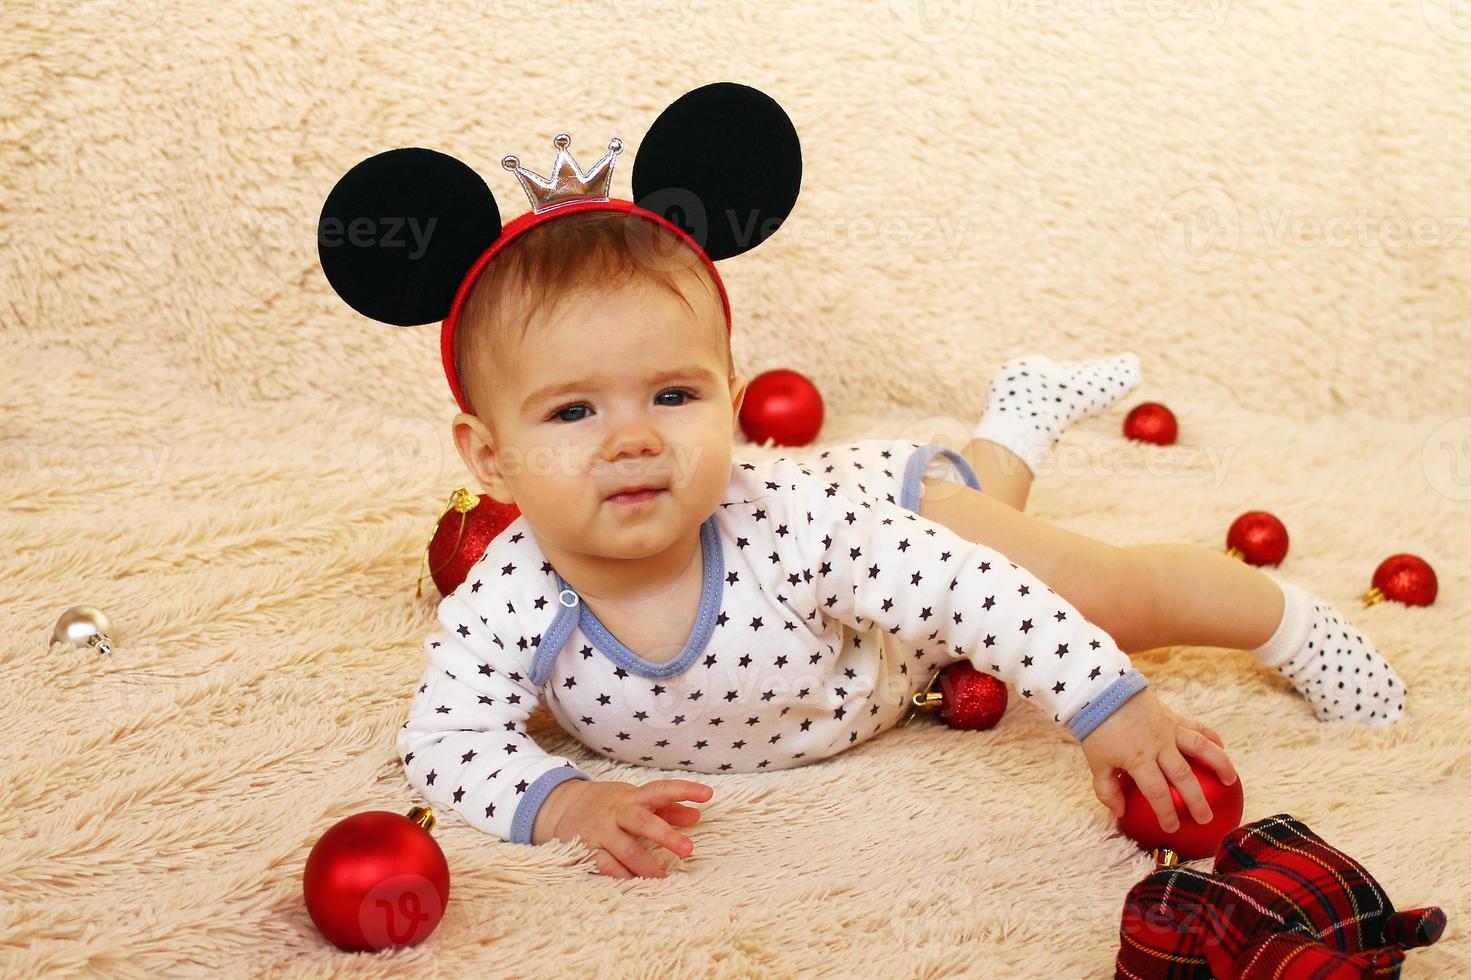 una linda niñita con orejas de ratón está acostada sobre una manta beige y jugando con adornos navideños rojos. foto